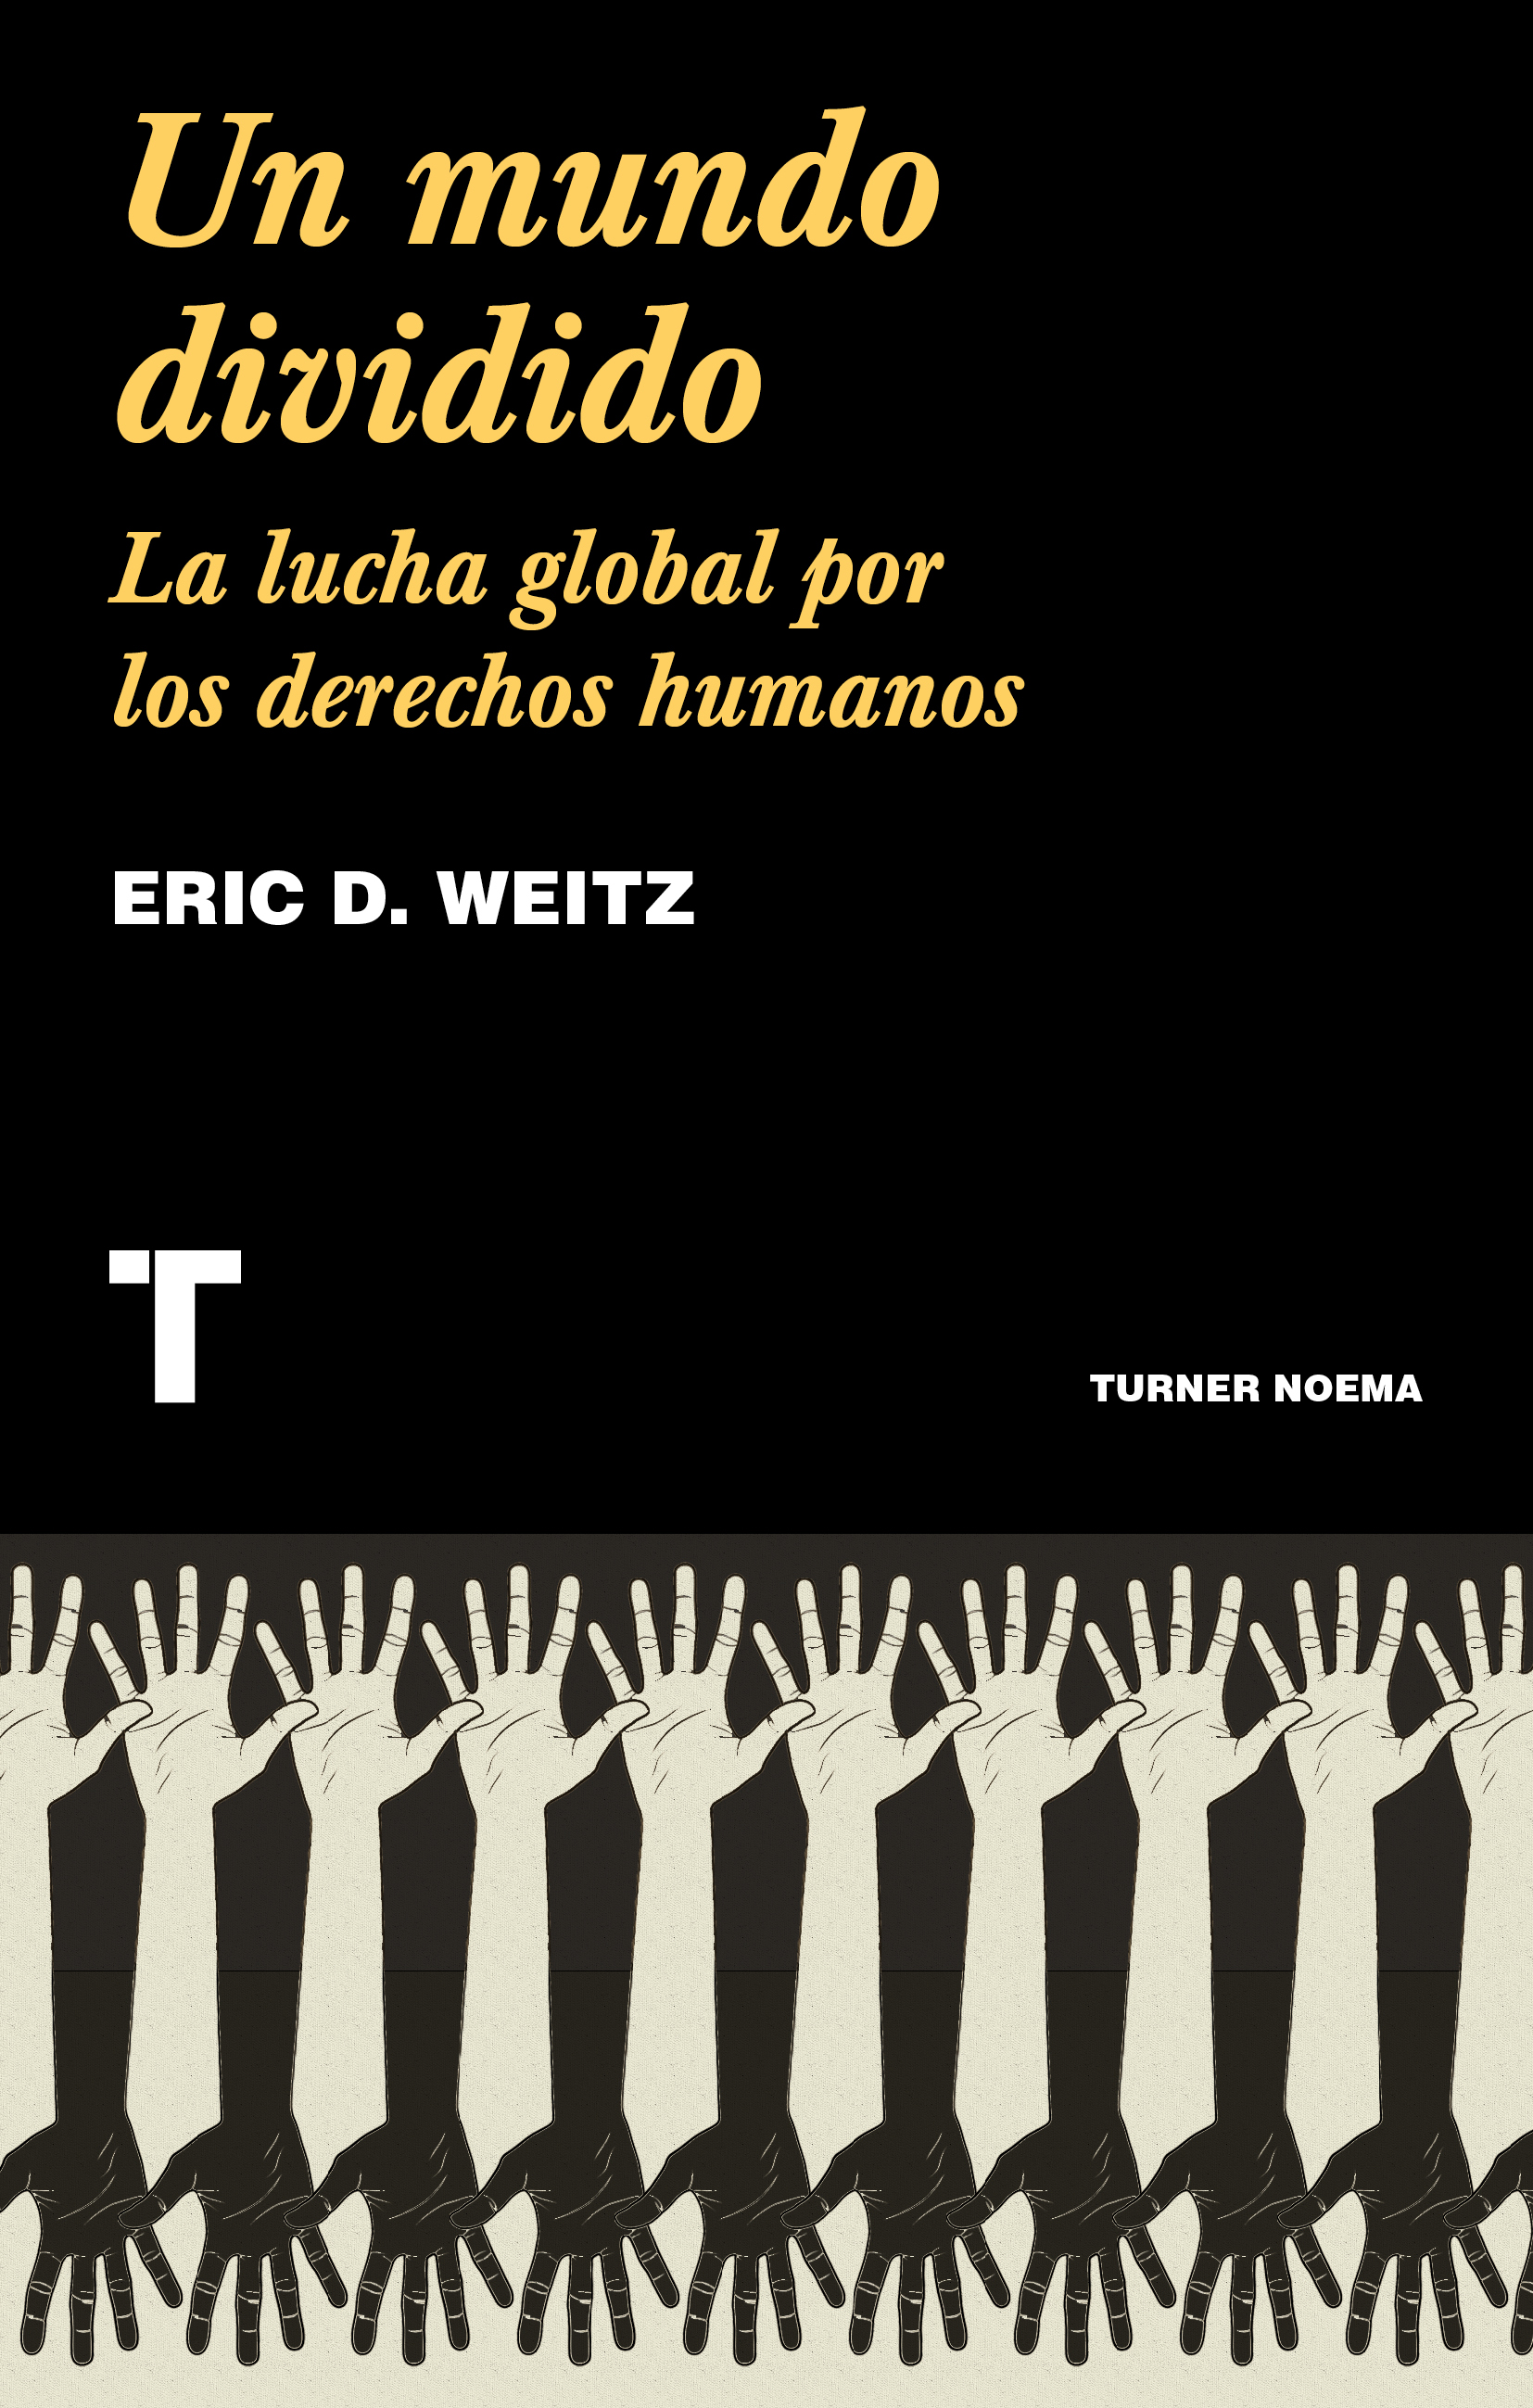 Un mundo dividido, de Eric D. Weitz